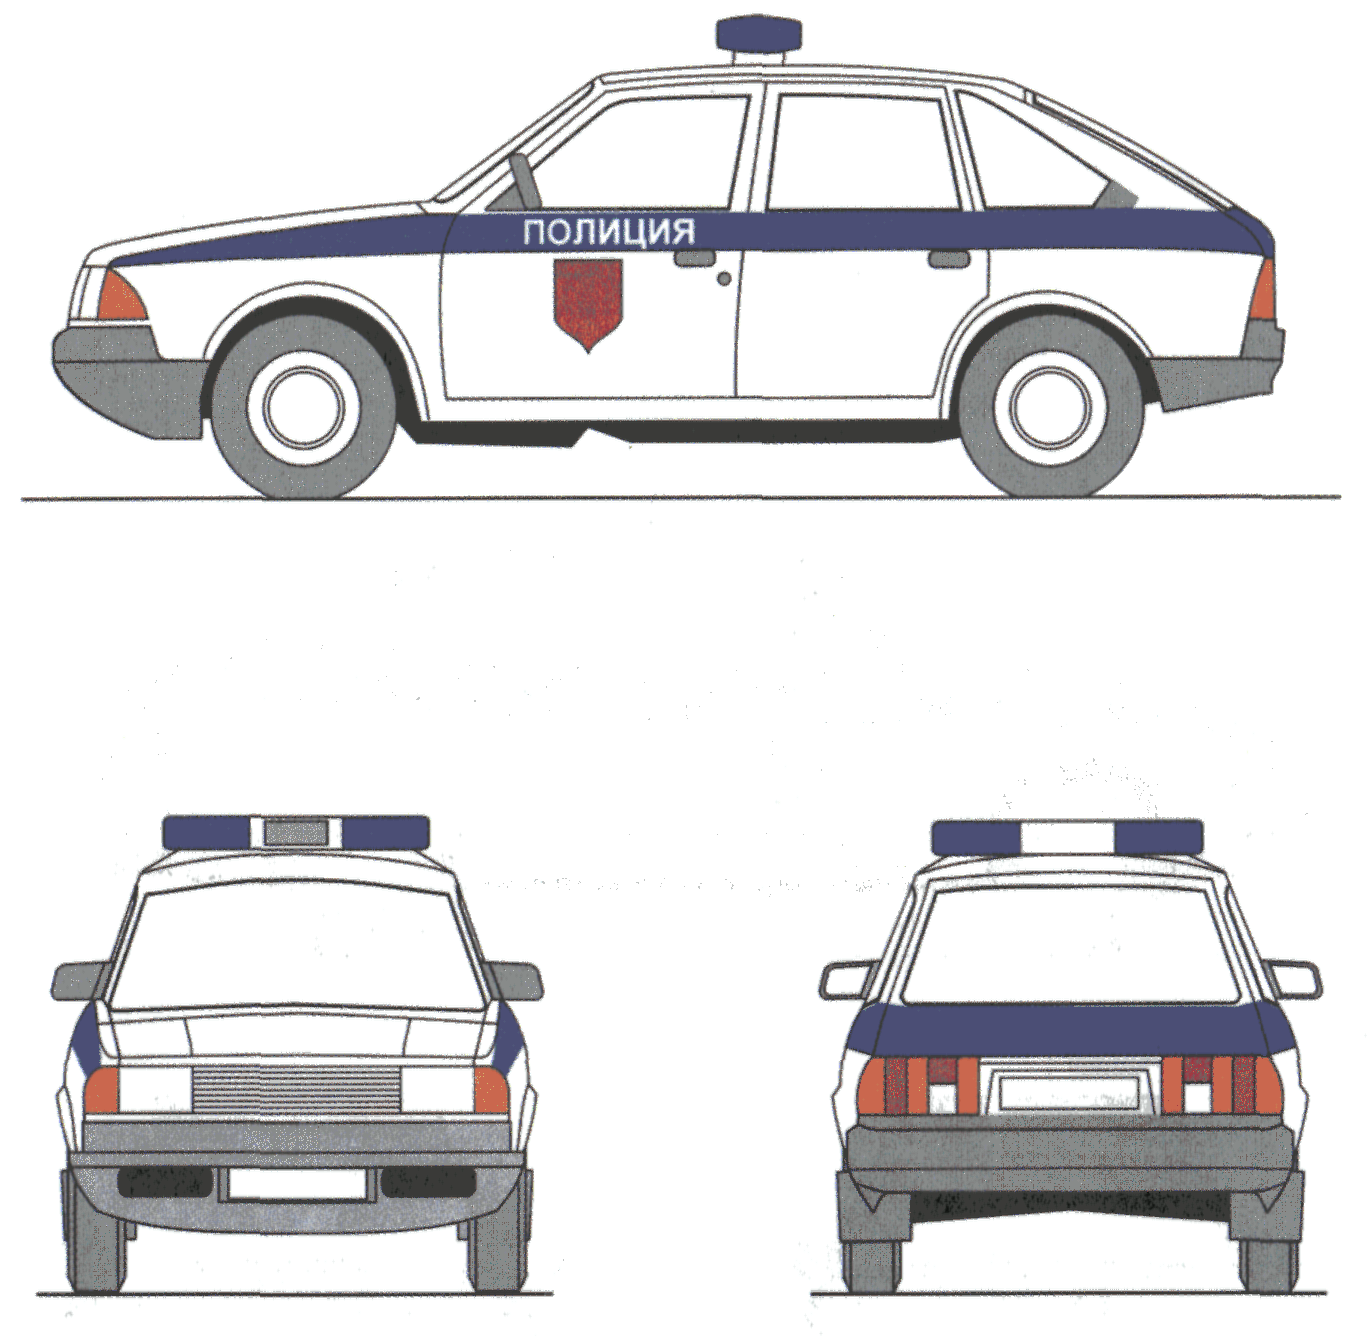 Цветографическая схема милиции СССР